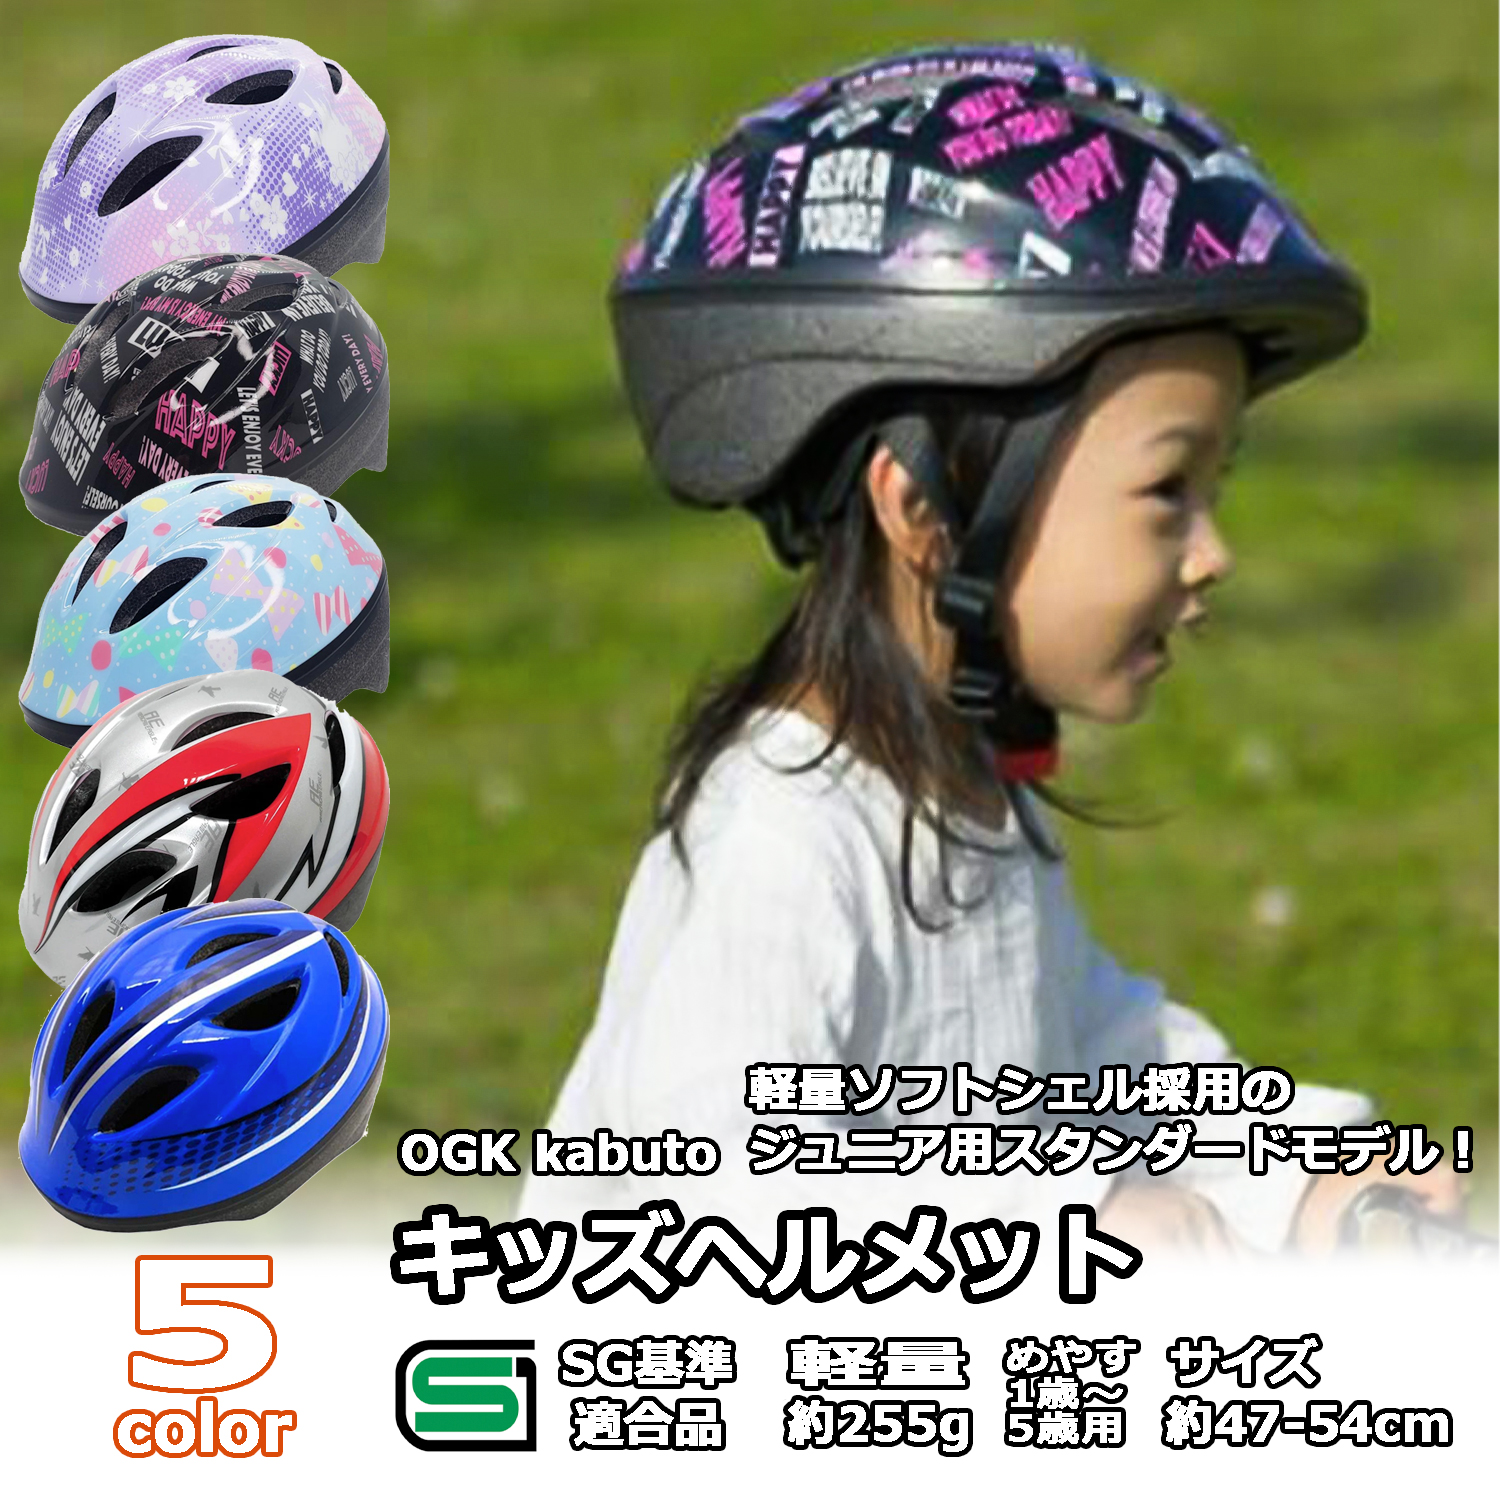  детский велосипед шлем стандартный Junior 47-54cm Princess violet SG Mark OGK Kabutoo-ji-ke- Kabuto ребенок девочка новый входить . подарок 